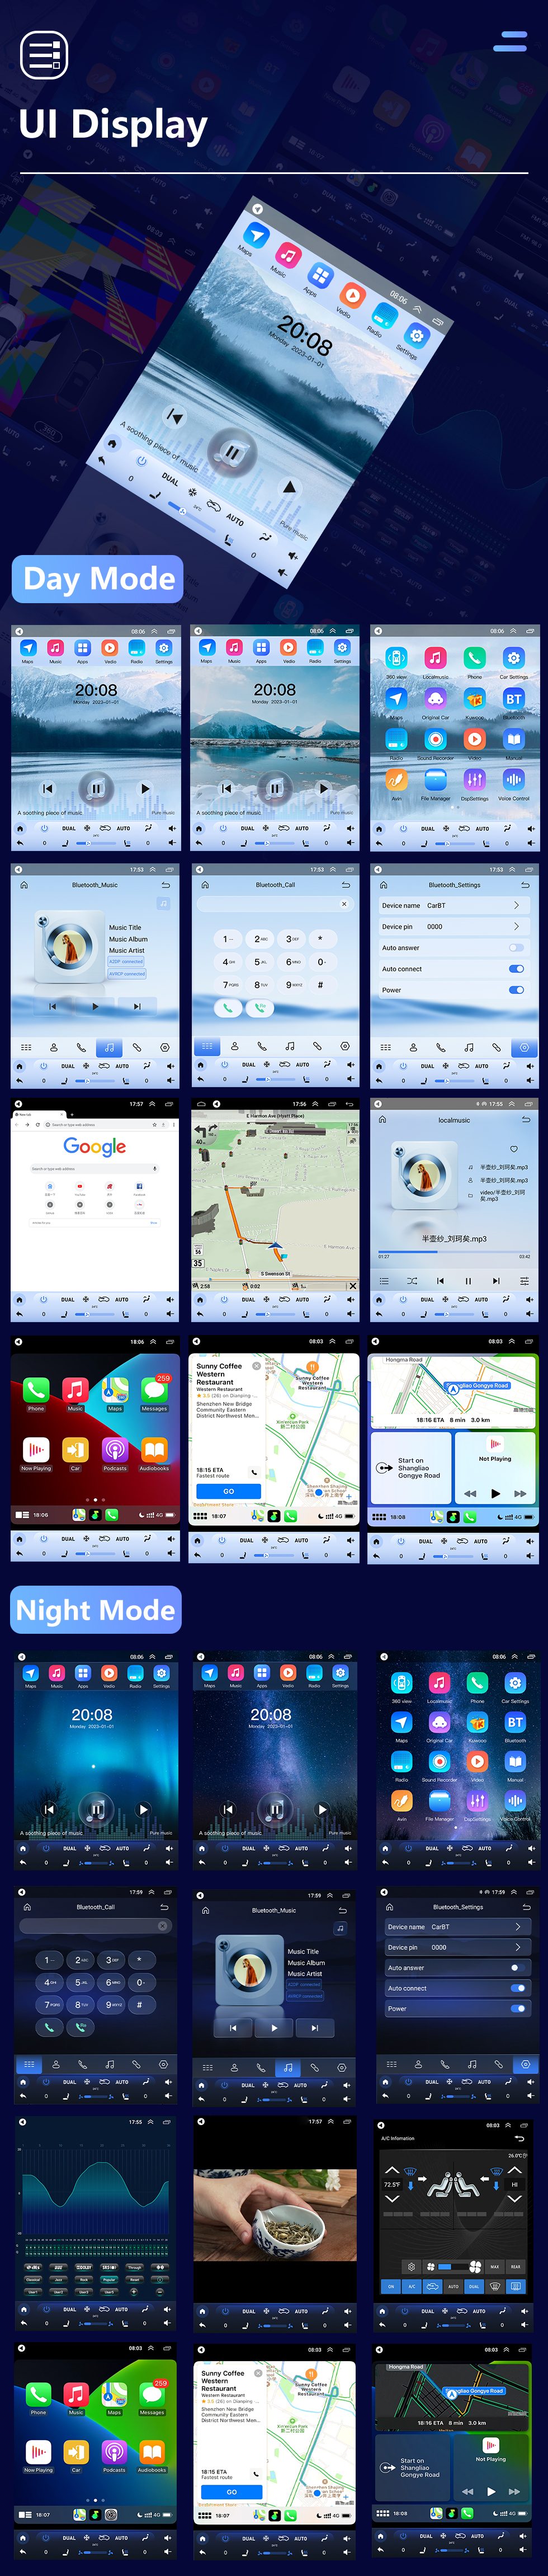 Seicane Écran tactile HD pour 2007-2012 Kia Carens Manual A/C Radio Android 10.0 Système de navigation GPS 9,7 pouces avec prise en charge Bluetooth USB TV numérique Carplay